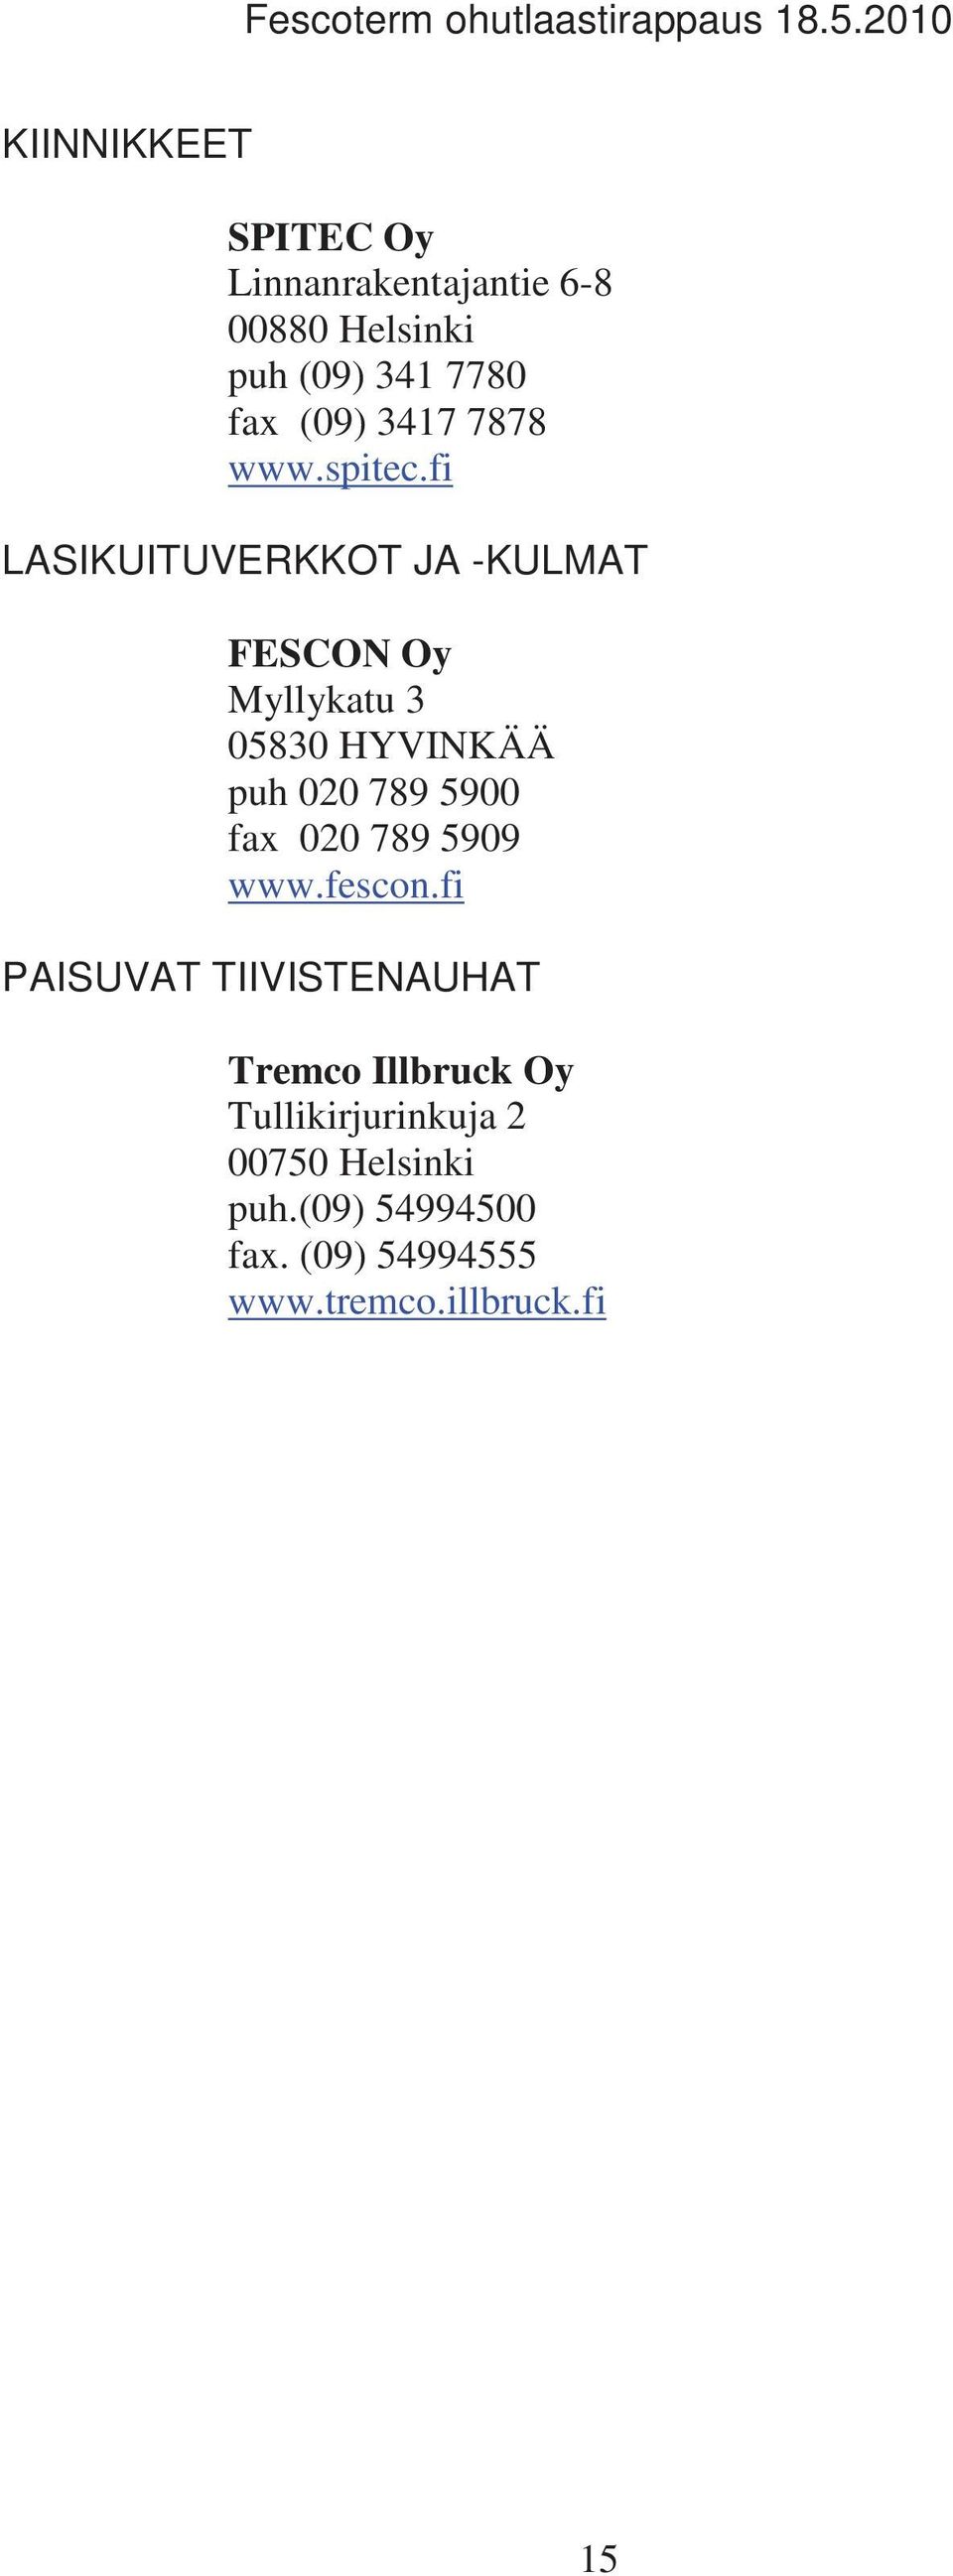 fi LASIKUITUVERKKOT JA -KULMAT FESCON Oy Myllykatu 3 05830 HYVINKÄÄ puh 020 789 5900 fax